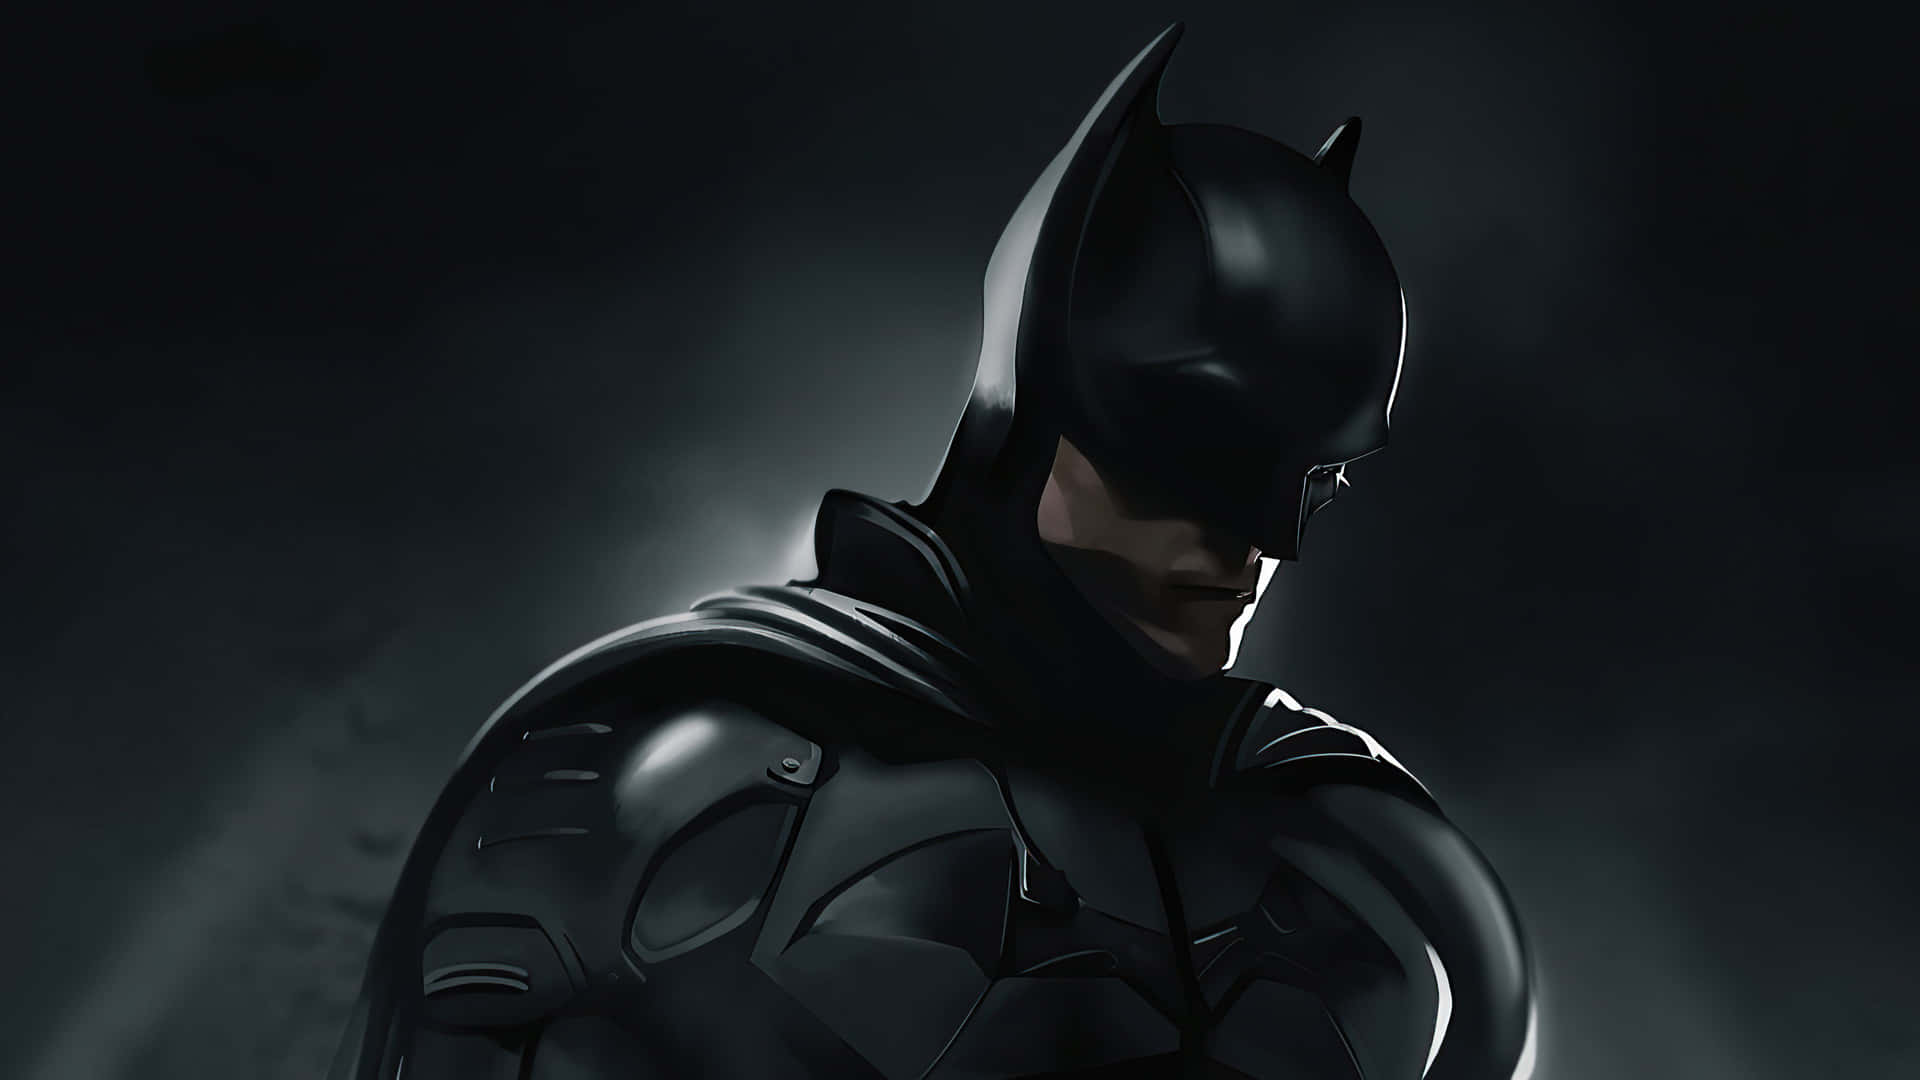 Bakgrundsbildenmed Batman